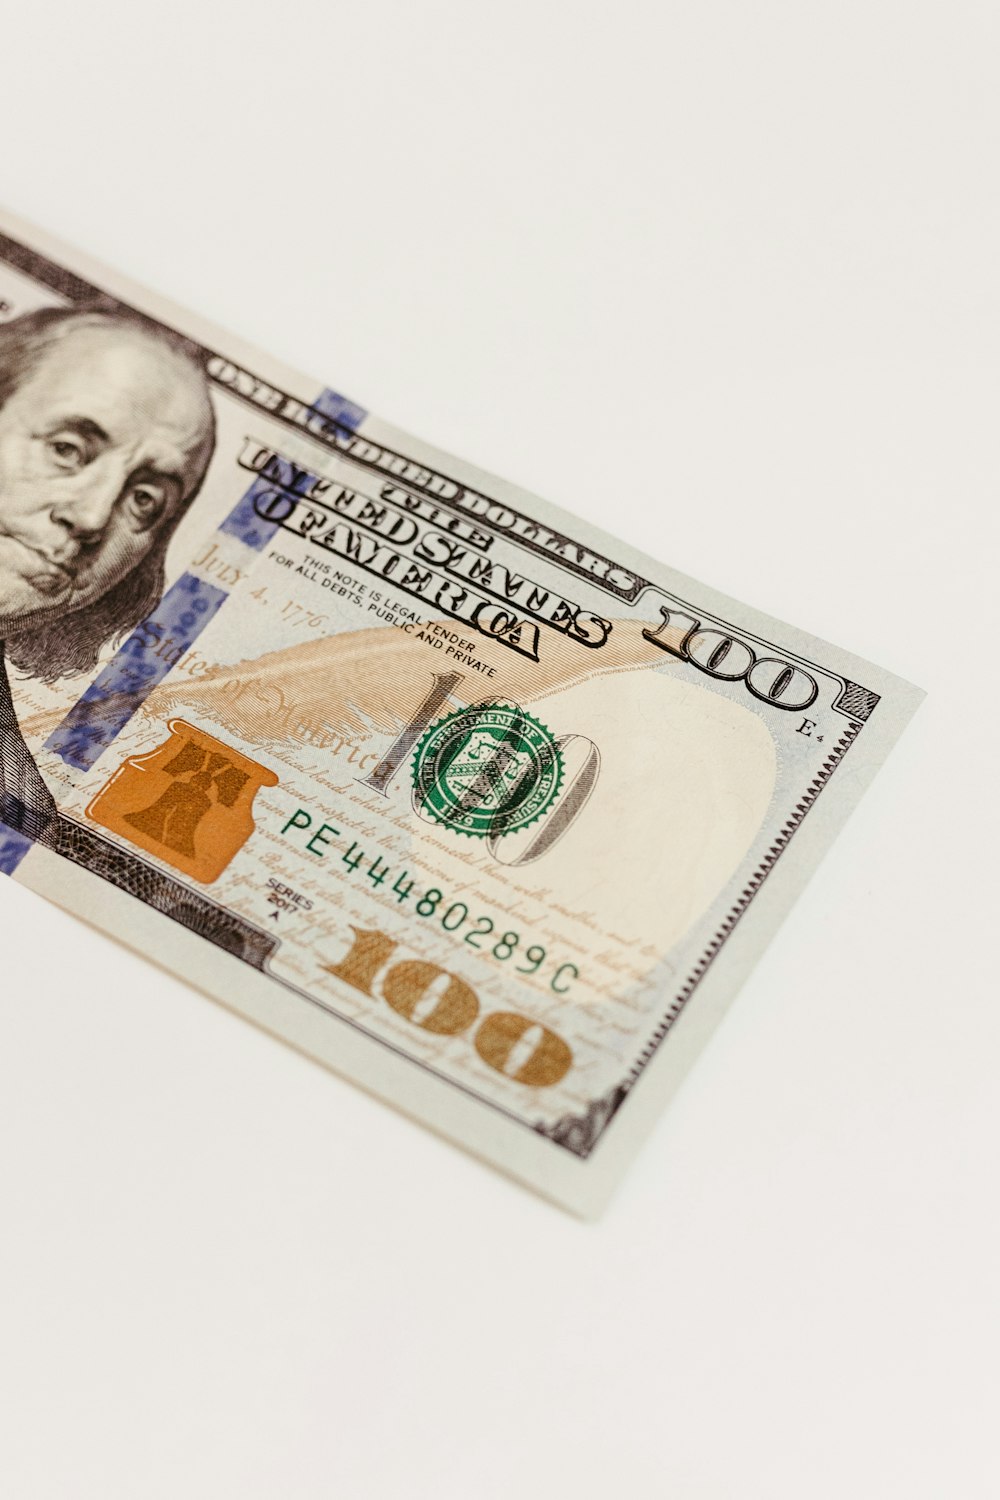 un billet de cent dollars posé sur une table blanche